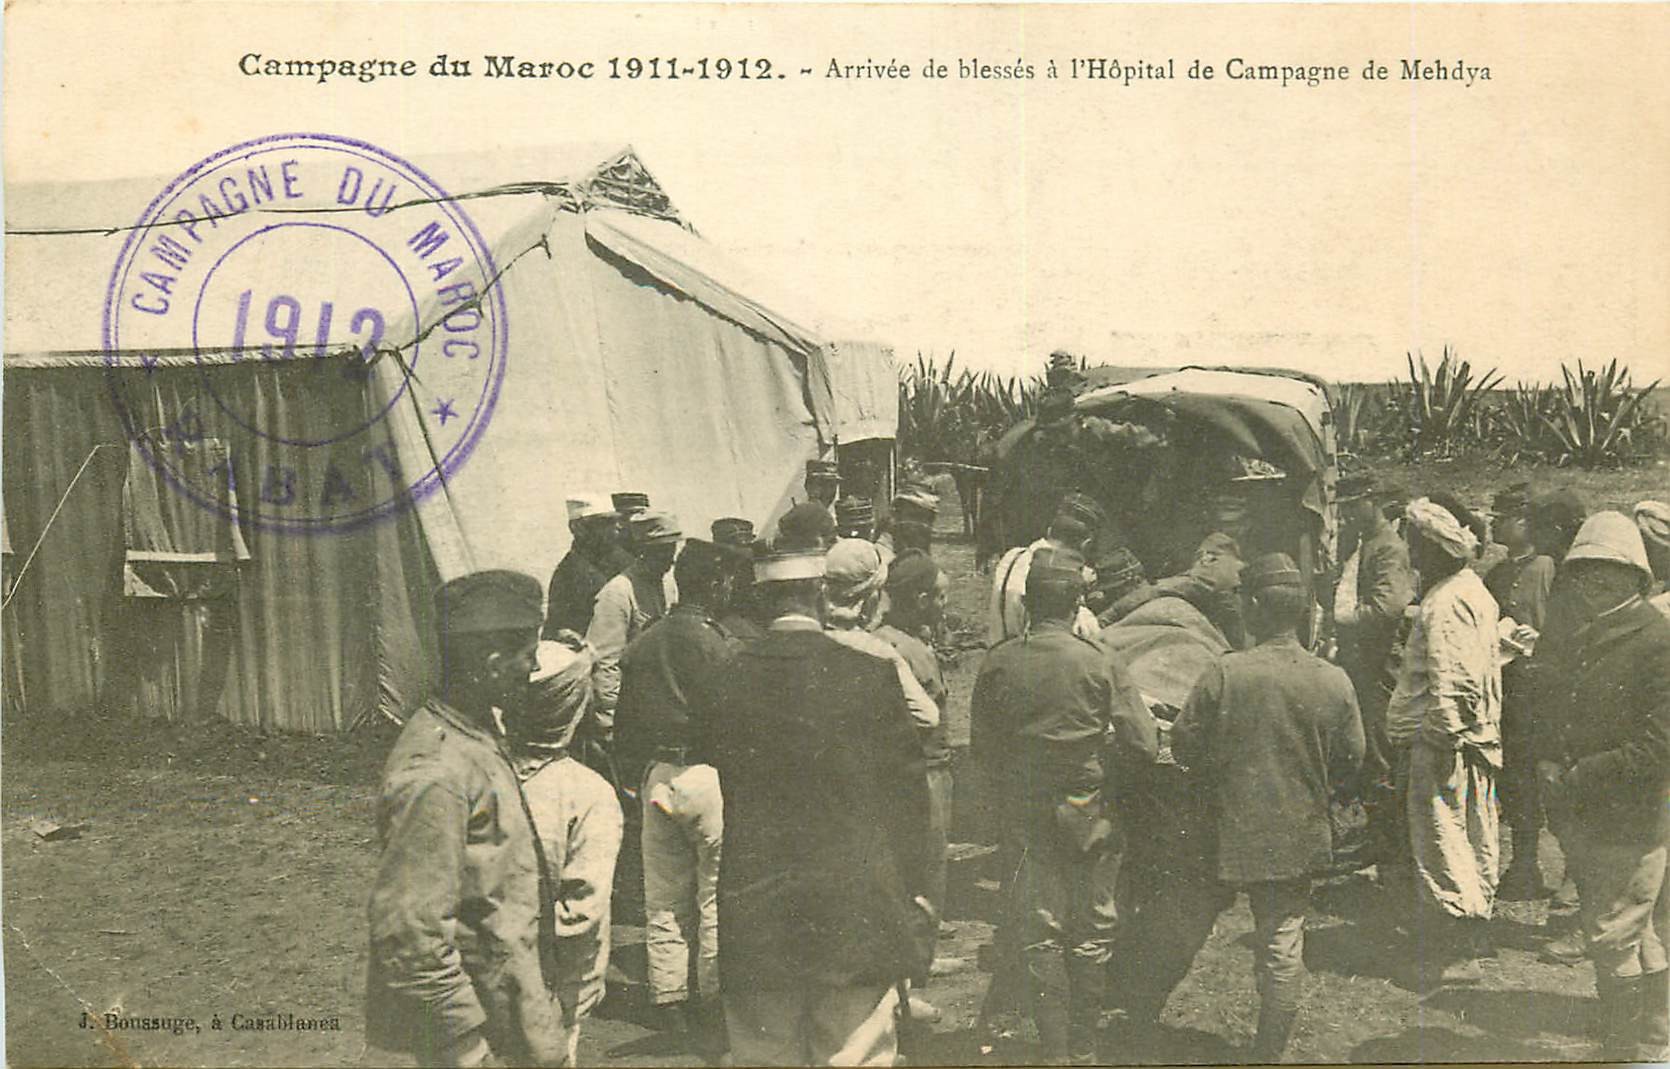 Le Maroc De 1912 à 1956 CAMPAGNE DU MAROC 1912. Arrivée de blessés Hôpital de Campagne de Mehdya